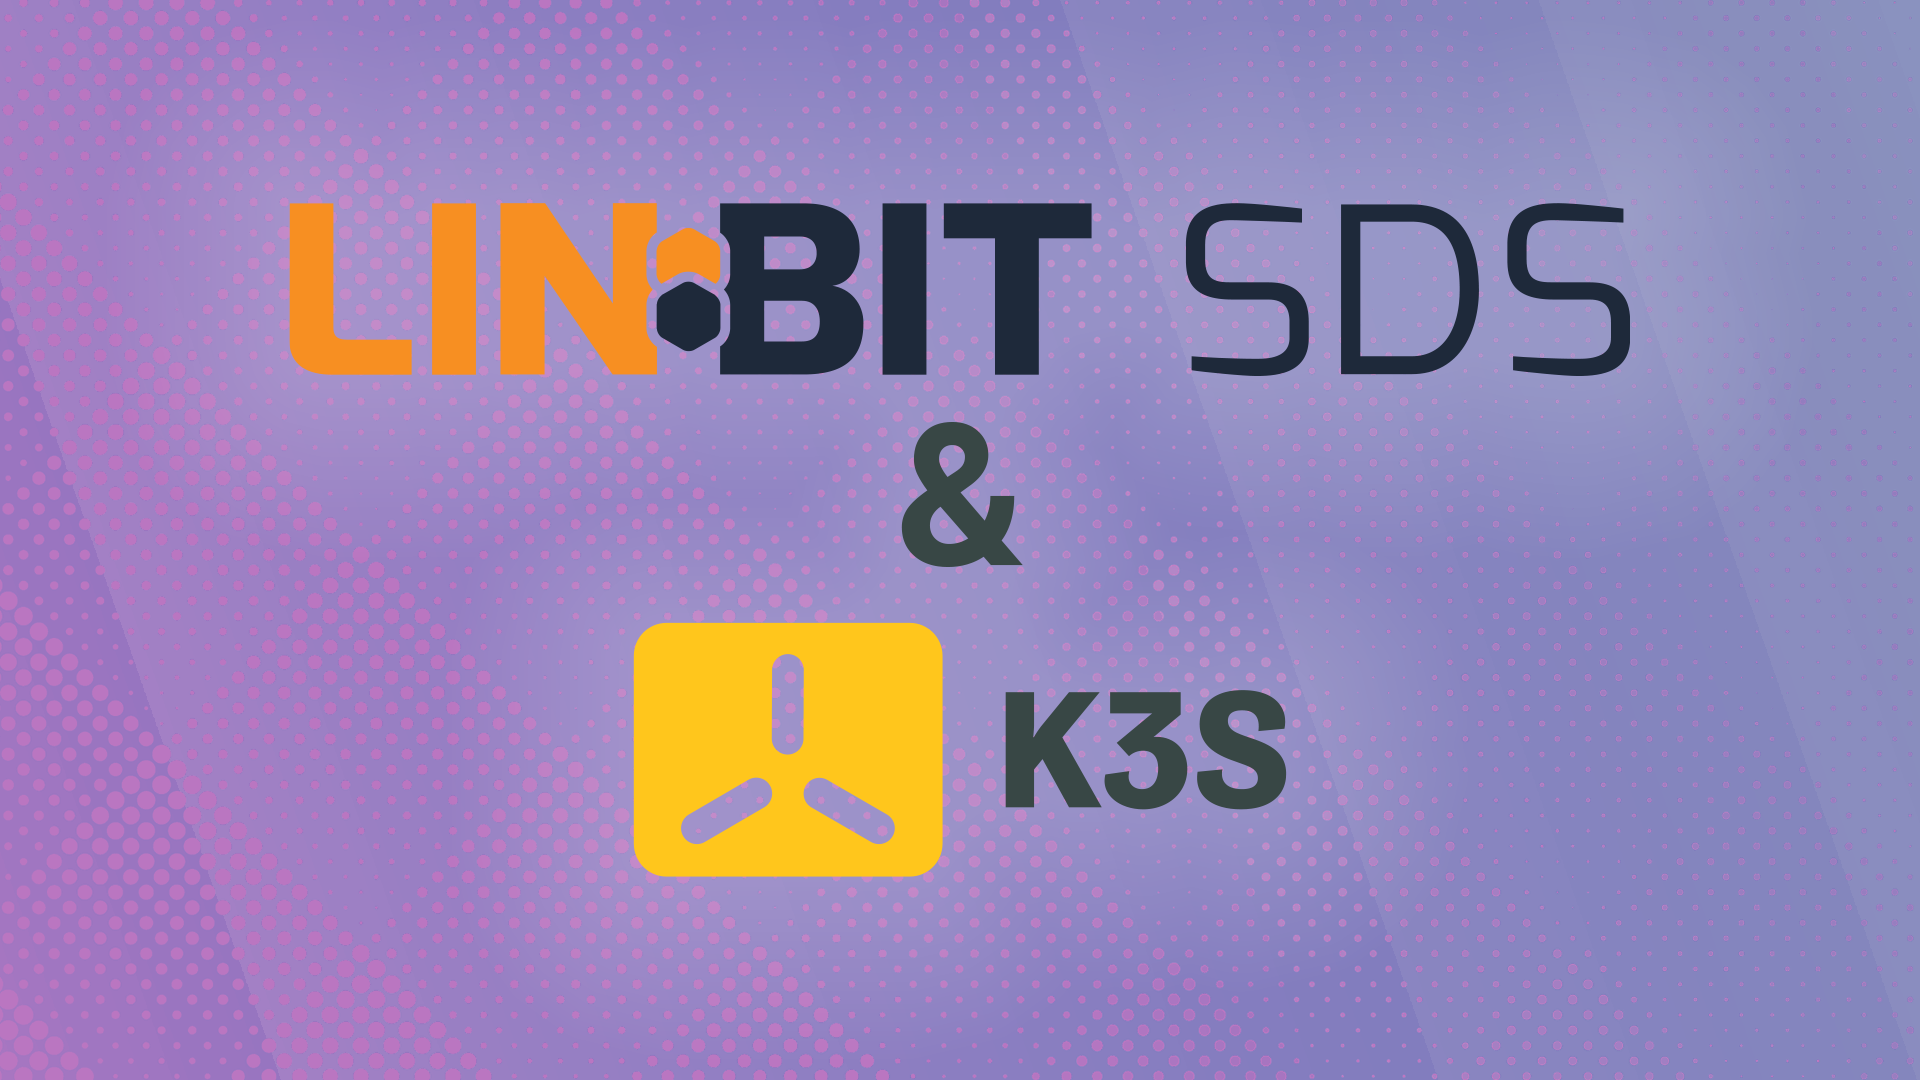 LINBIT SDS & K3s logos